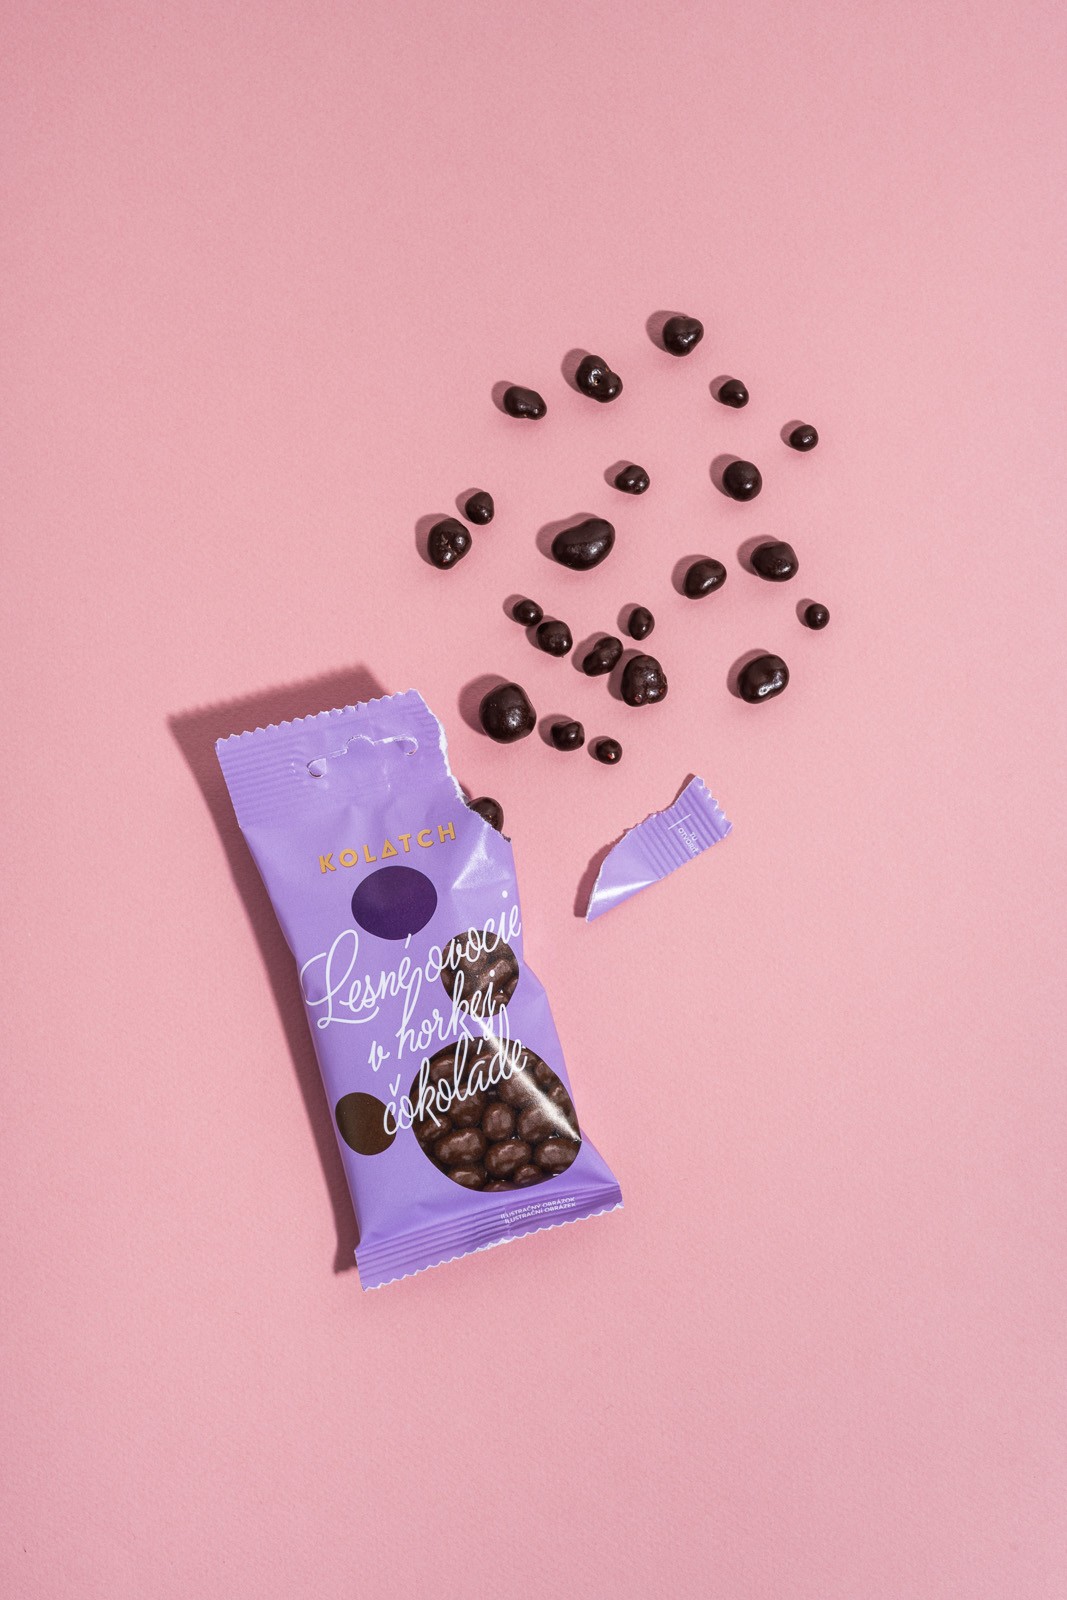 巧克力糖果包装设计案例赏析 